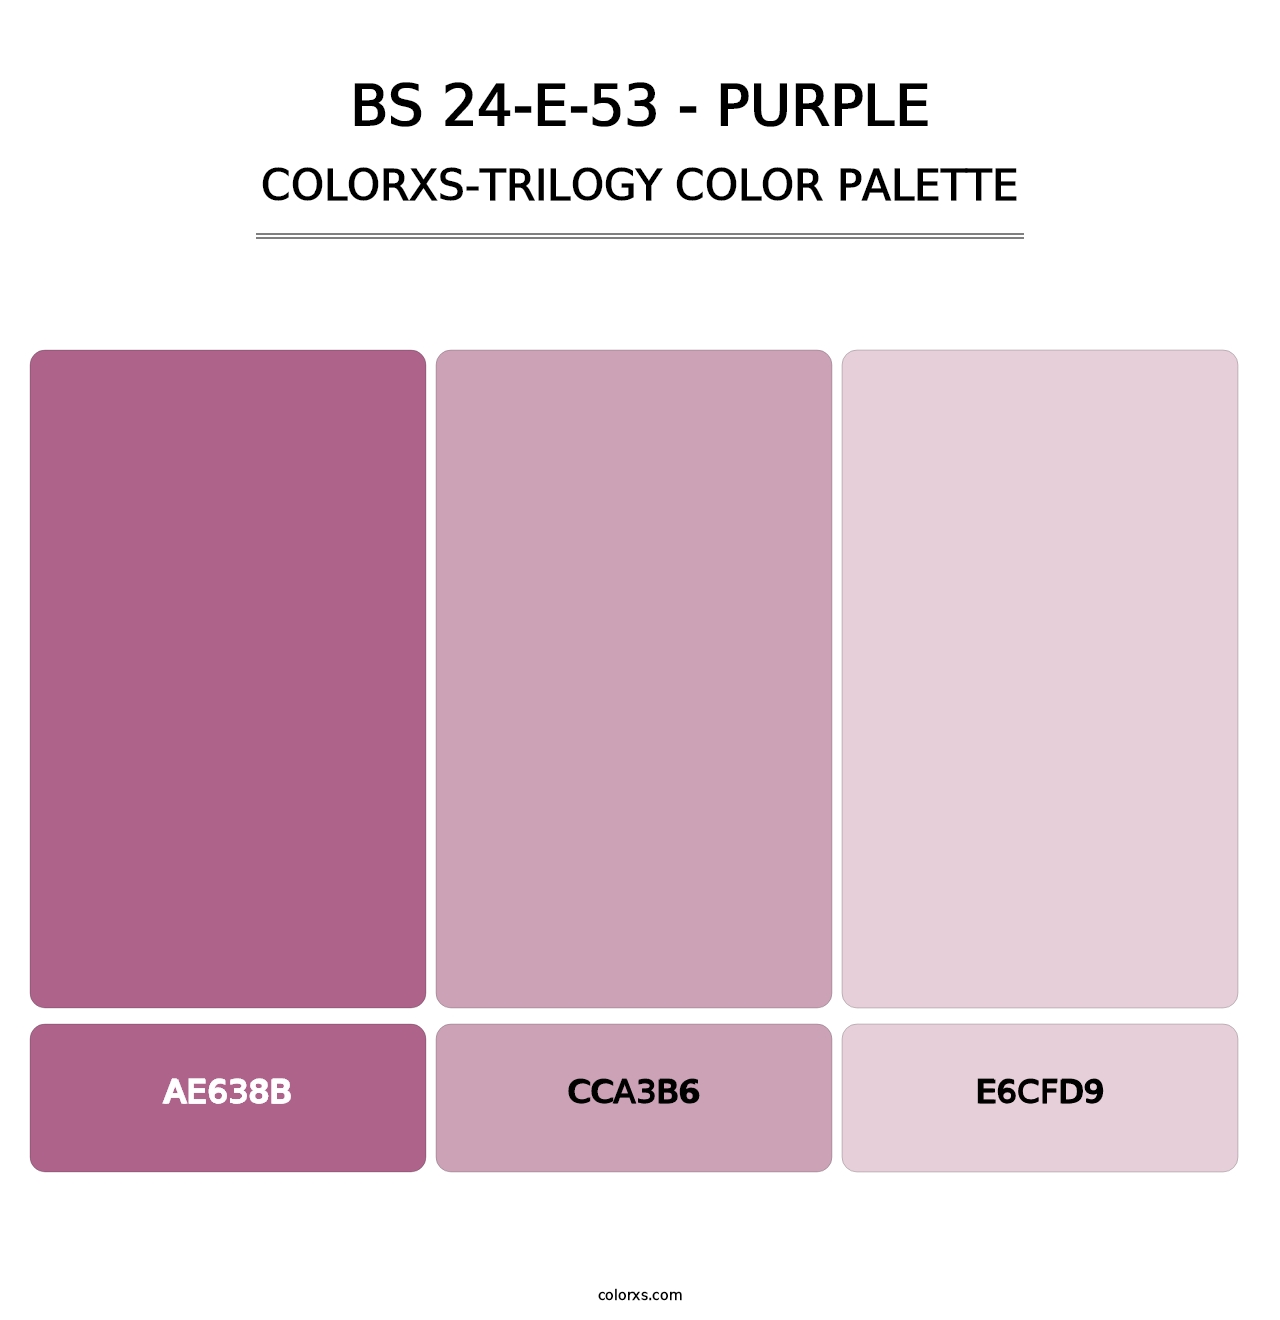 BS 24-E-53 - Purple - Colorxs Trilogy Palette